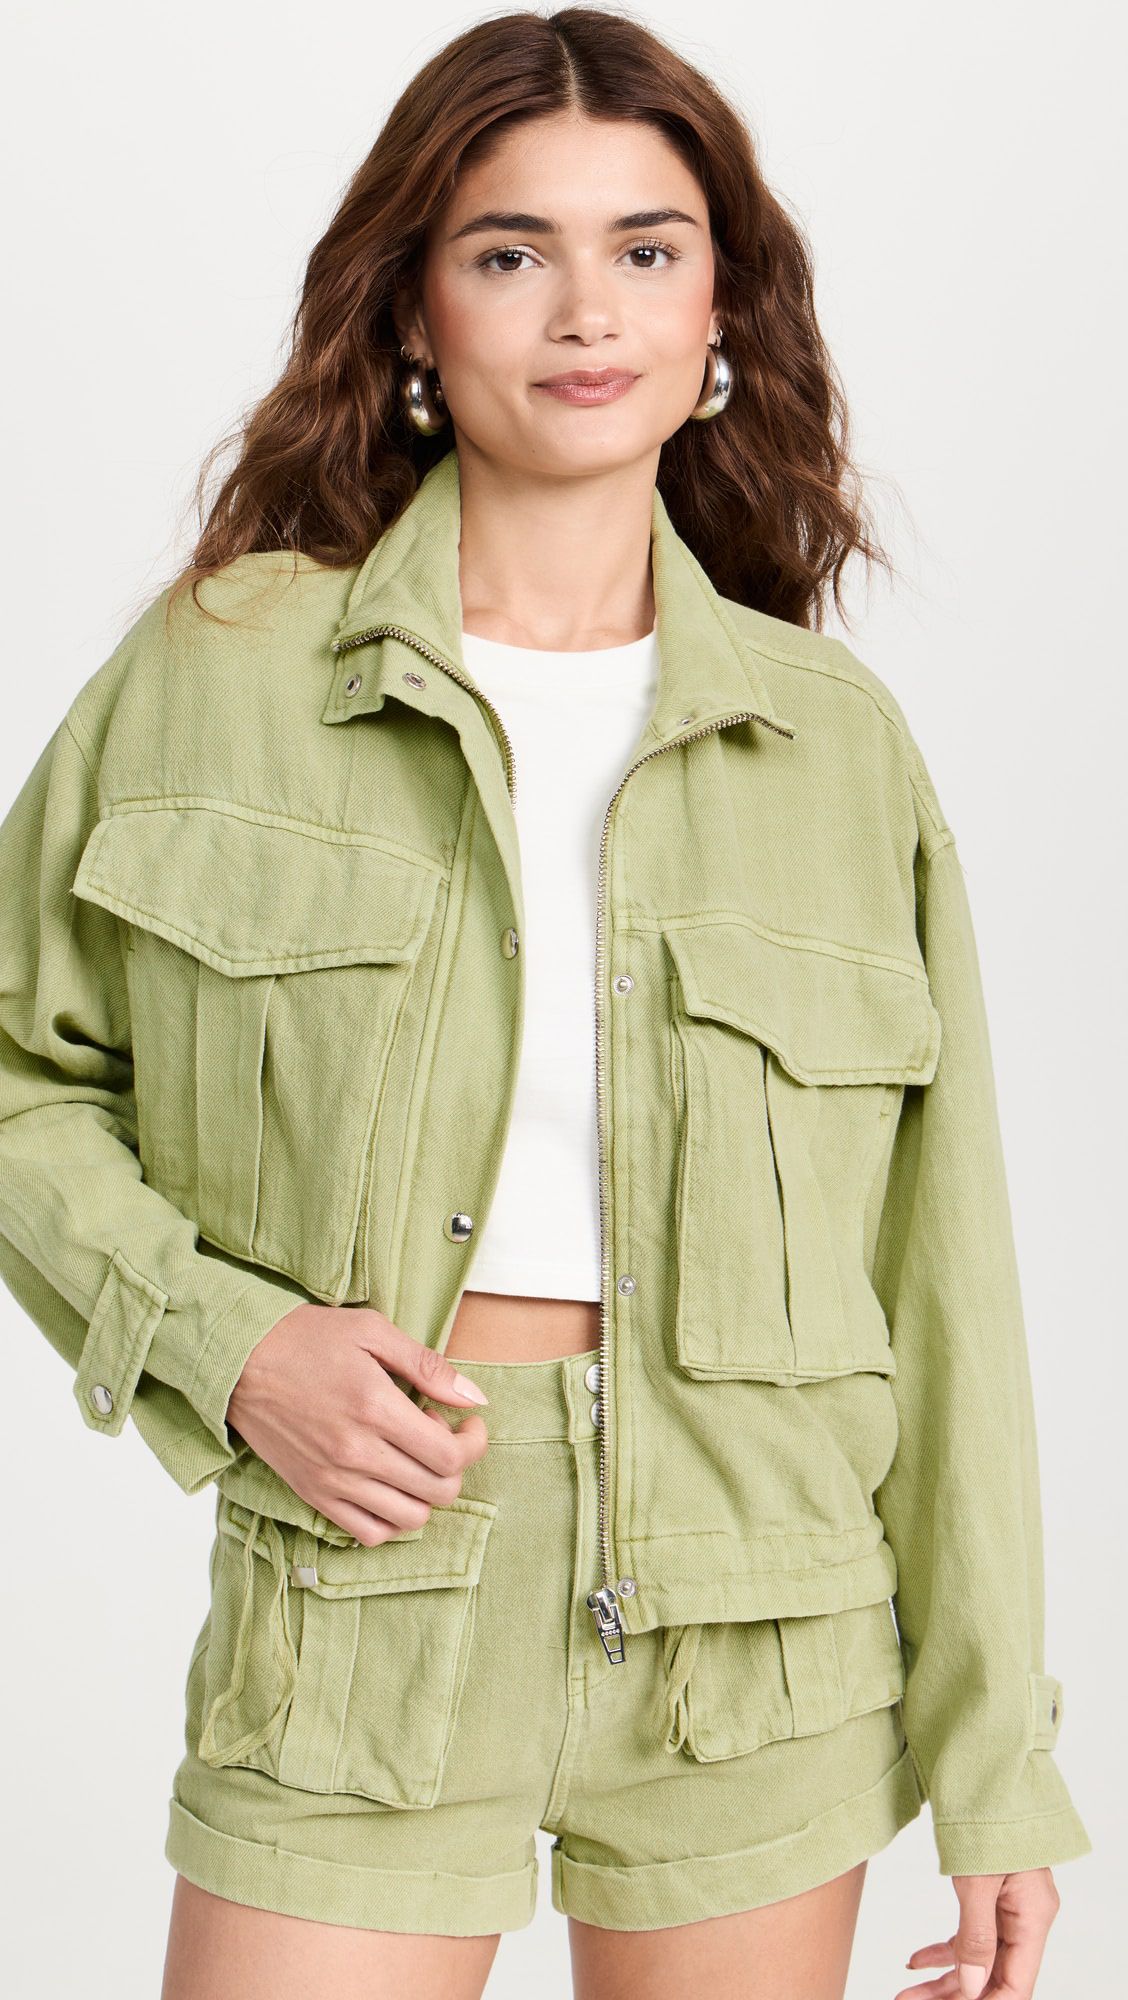 ODM Elegant fashion large pocket denim zipper jacket cargo shorts set